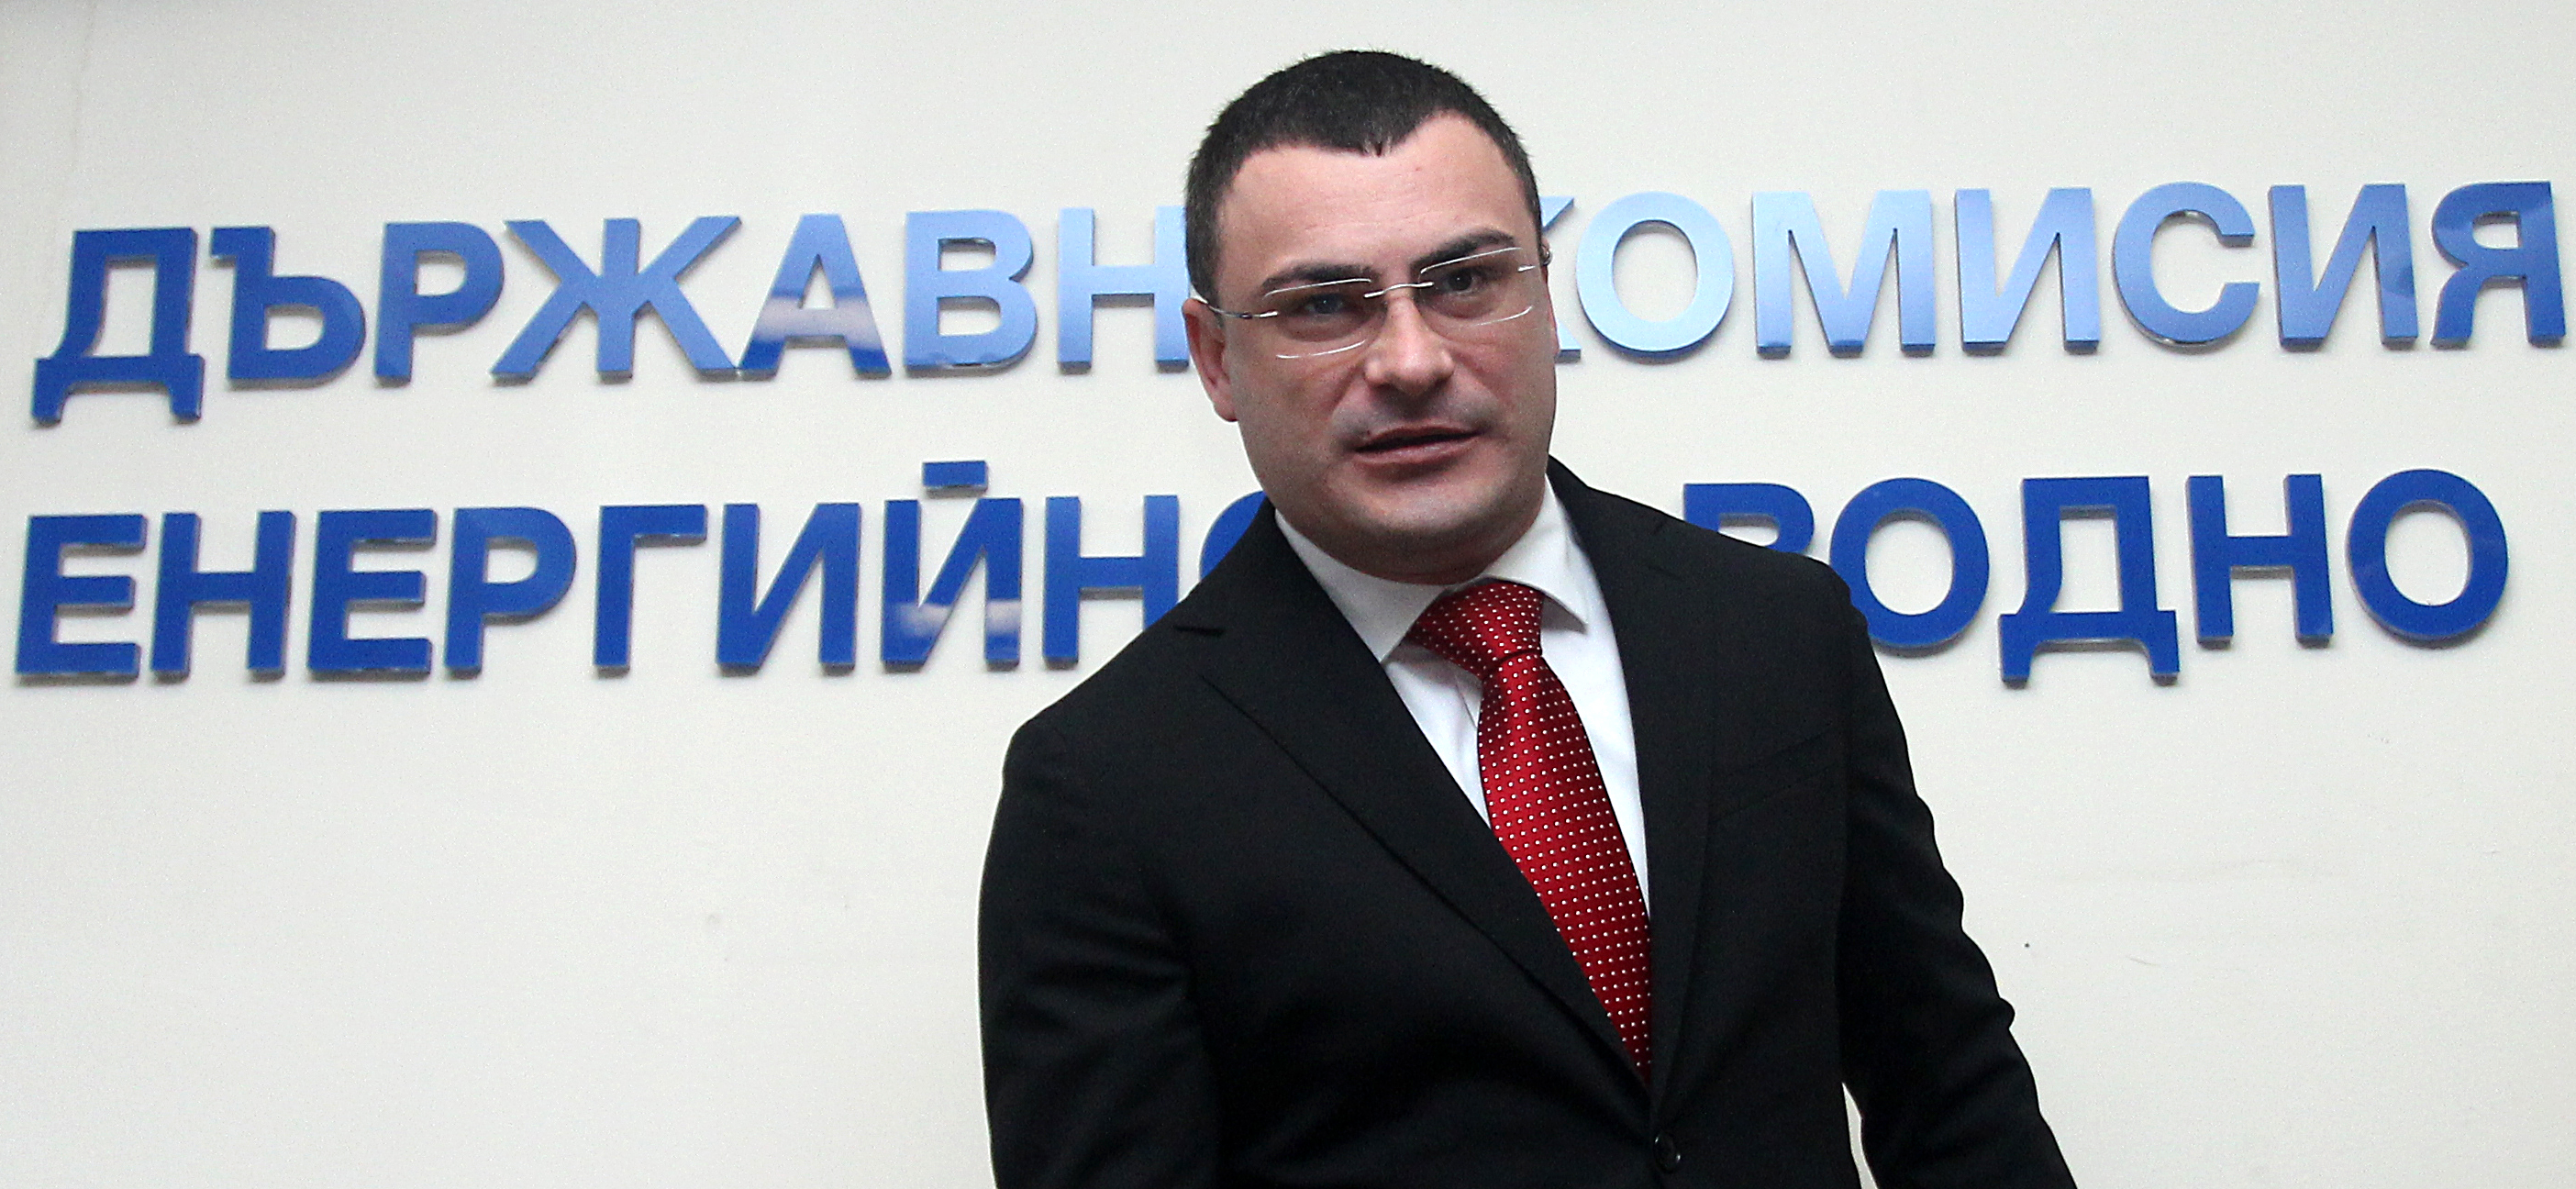 Комисията не може да приеме решение, защото преди 2 дни от НЕК са представили нови доказателства, каза Боян Боев